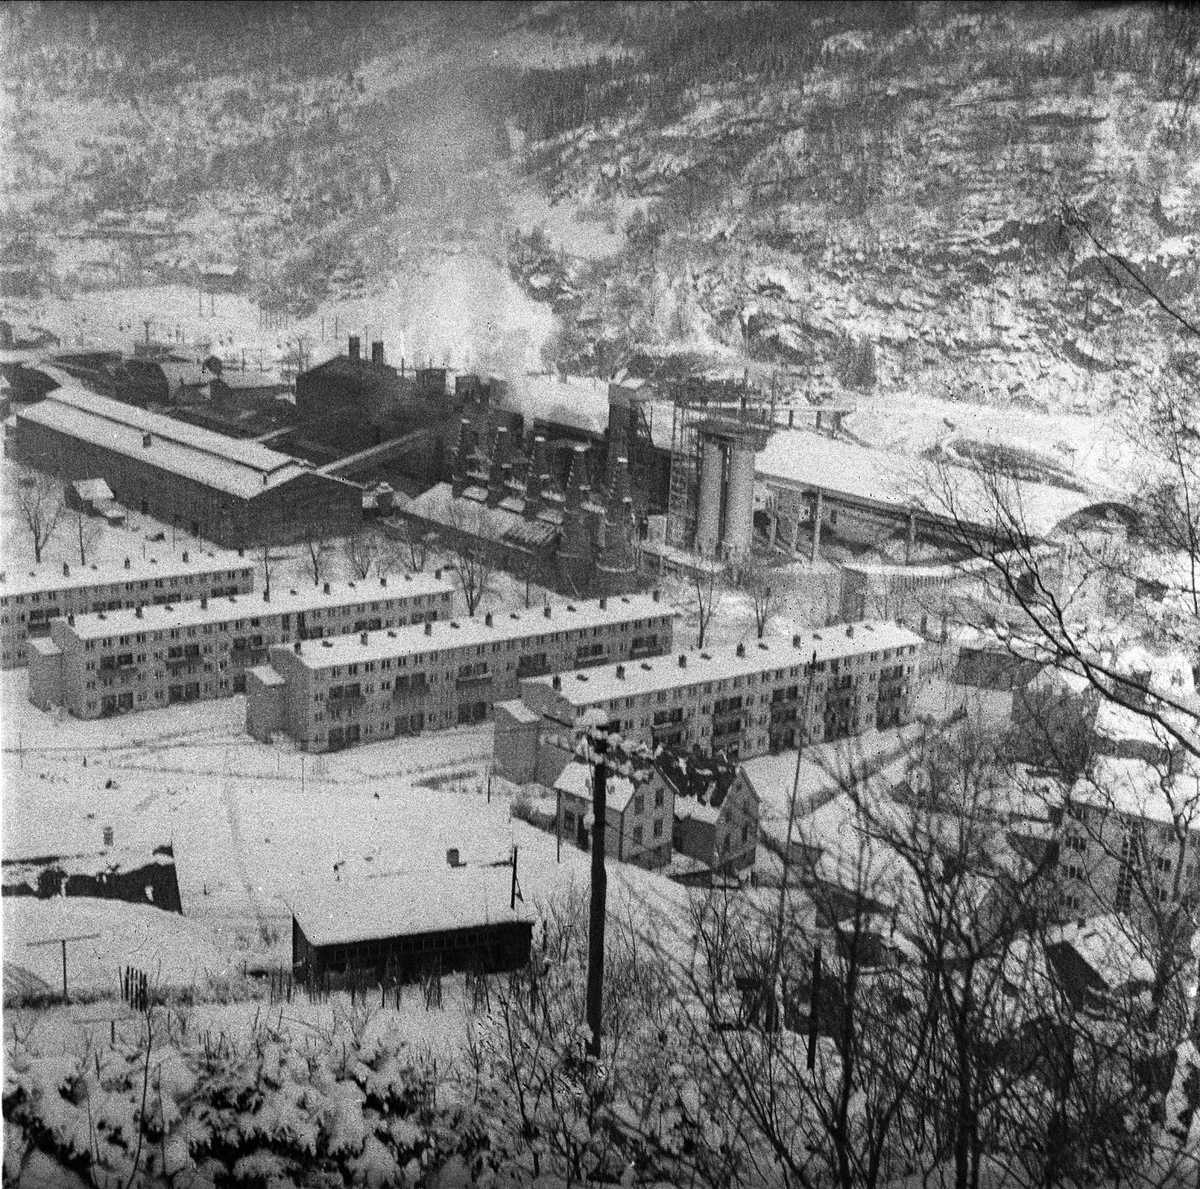 Odda, Hordaland, mars 1957. Bygninger, industri og boliger.